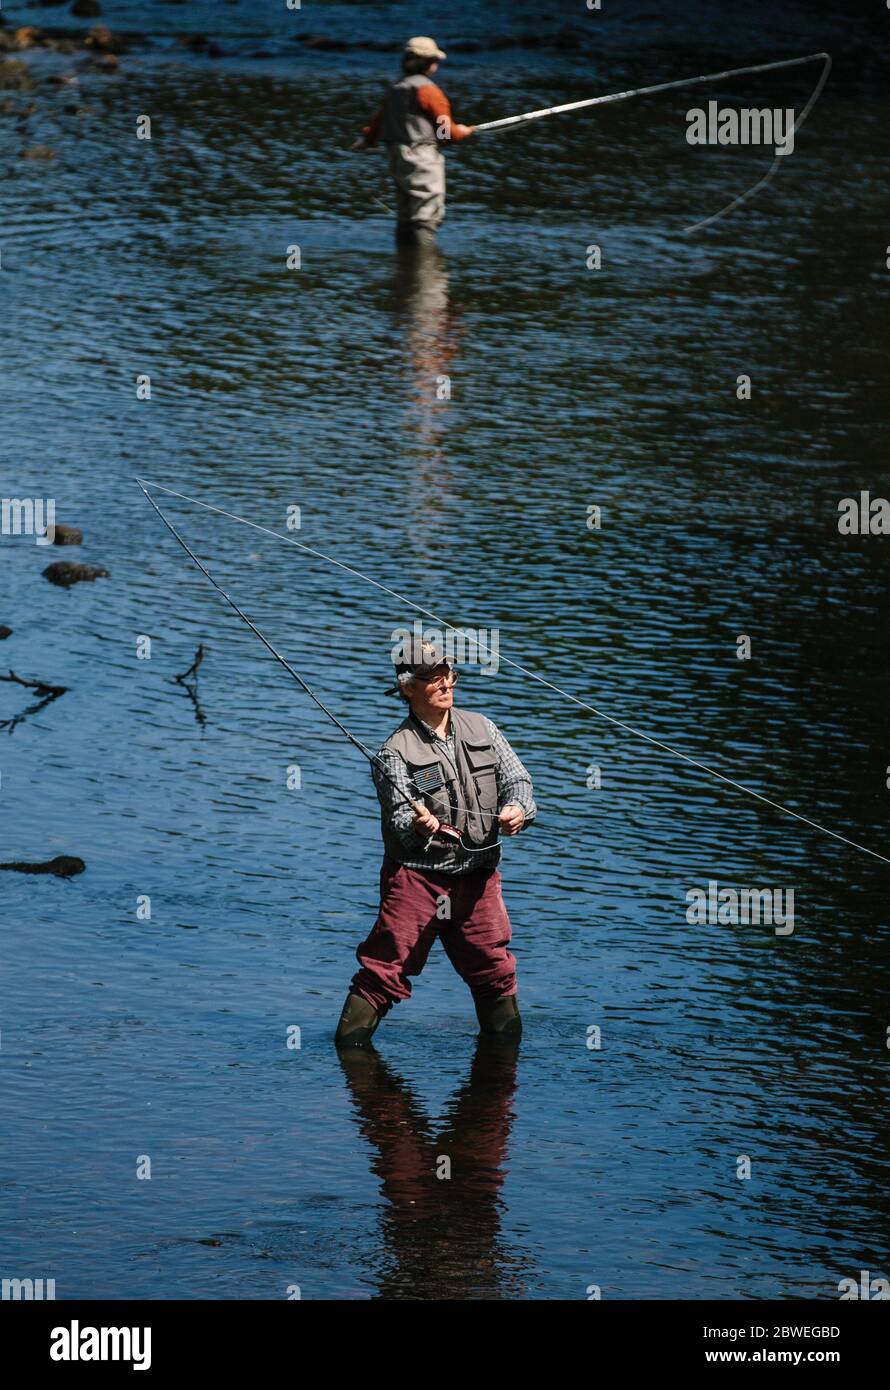 Pesca con mosca en el río Kelvin, Glasgow, Escocia, Reino Unido Foto de stock